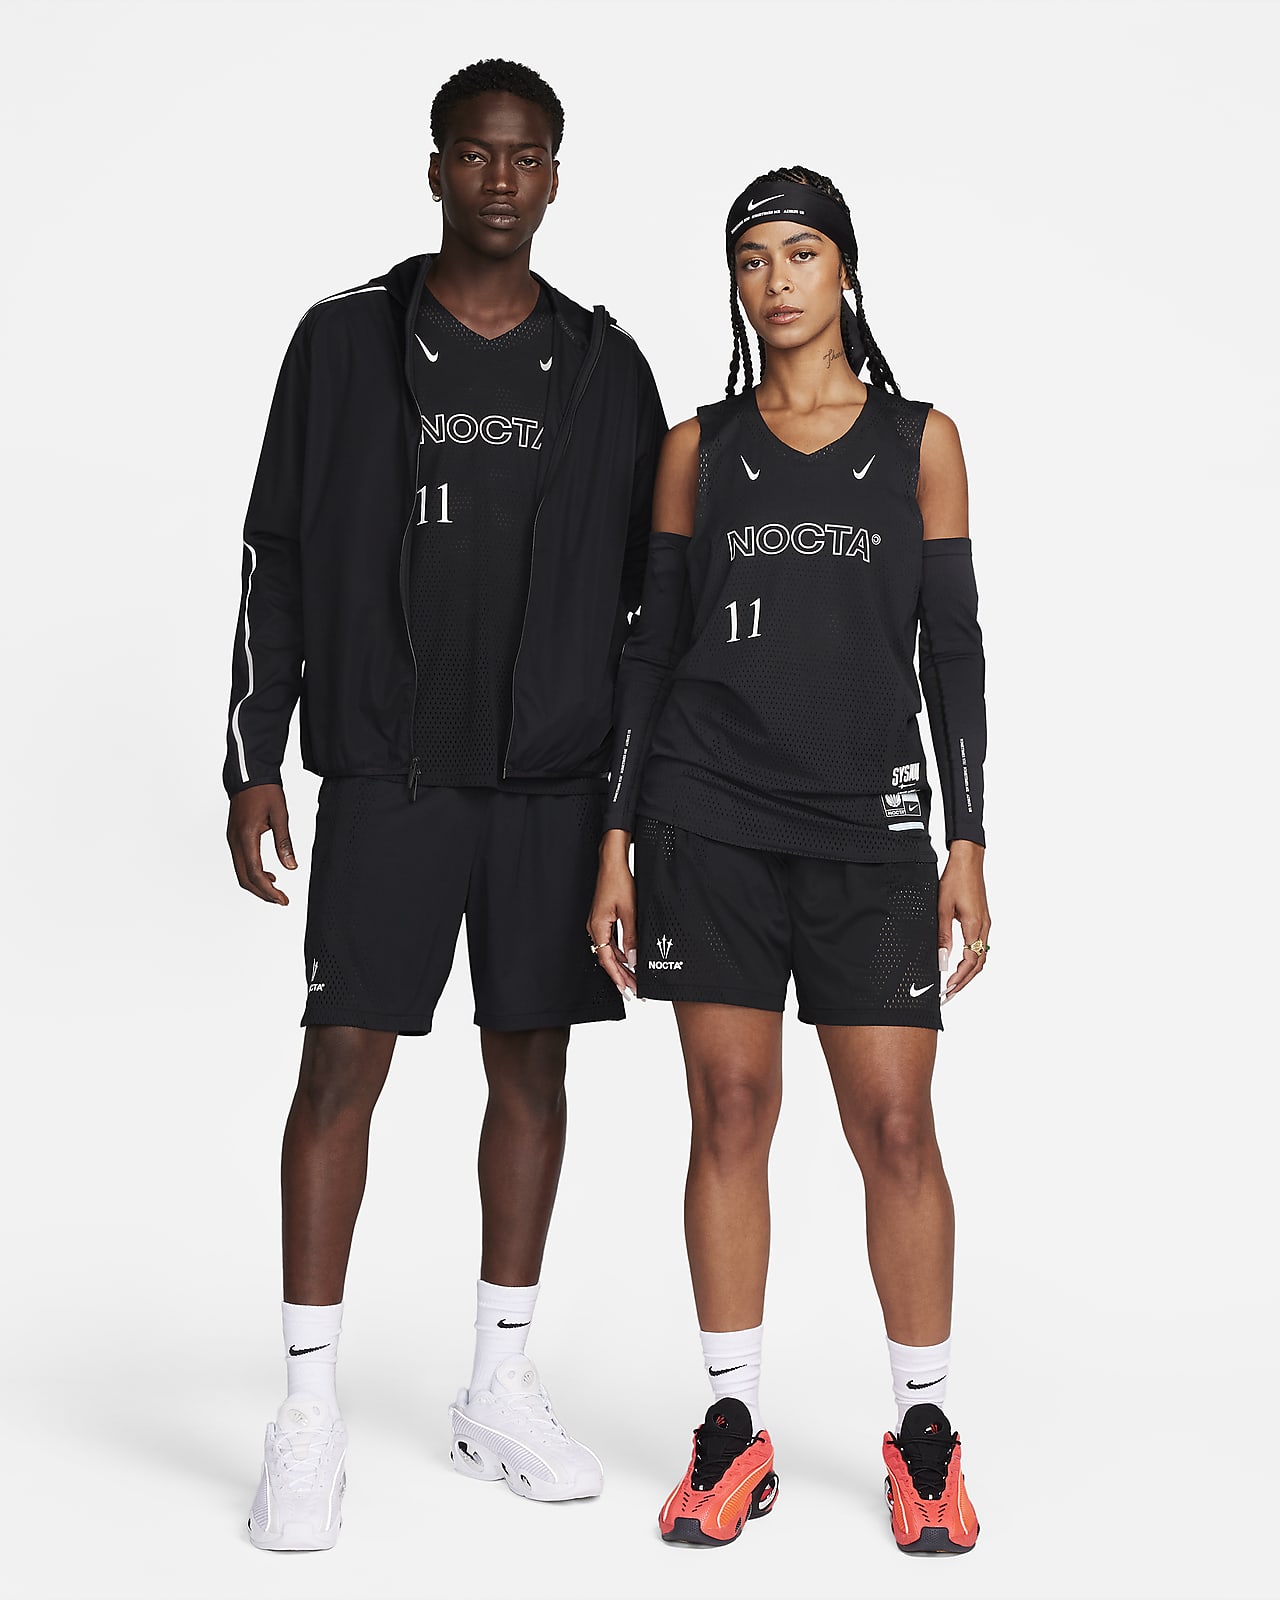 NOCTA Men's Dri-FIT Jersey. Nike.com